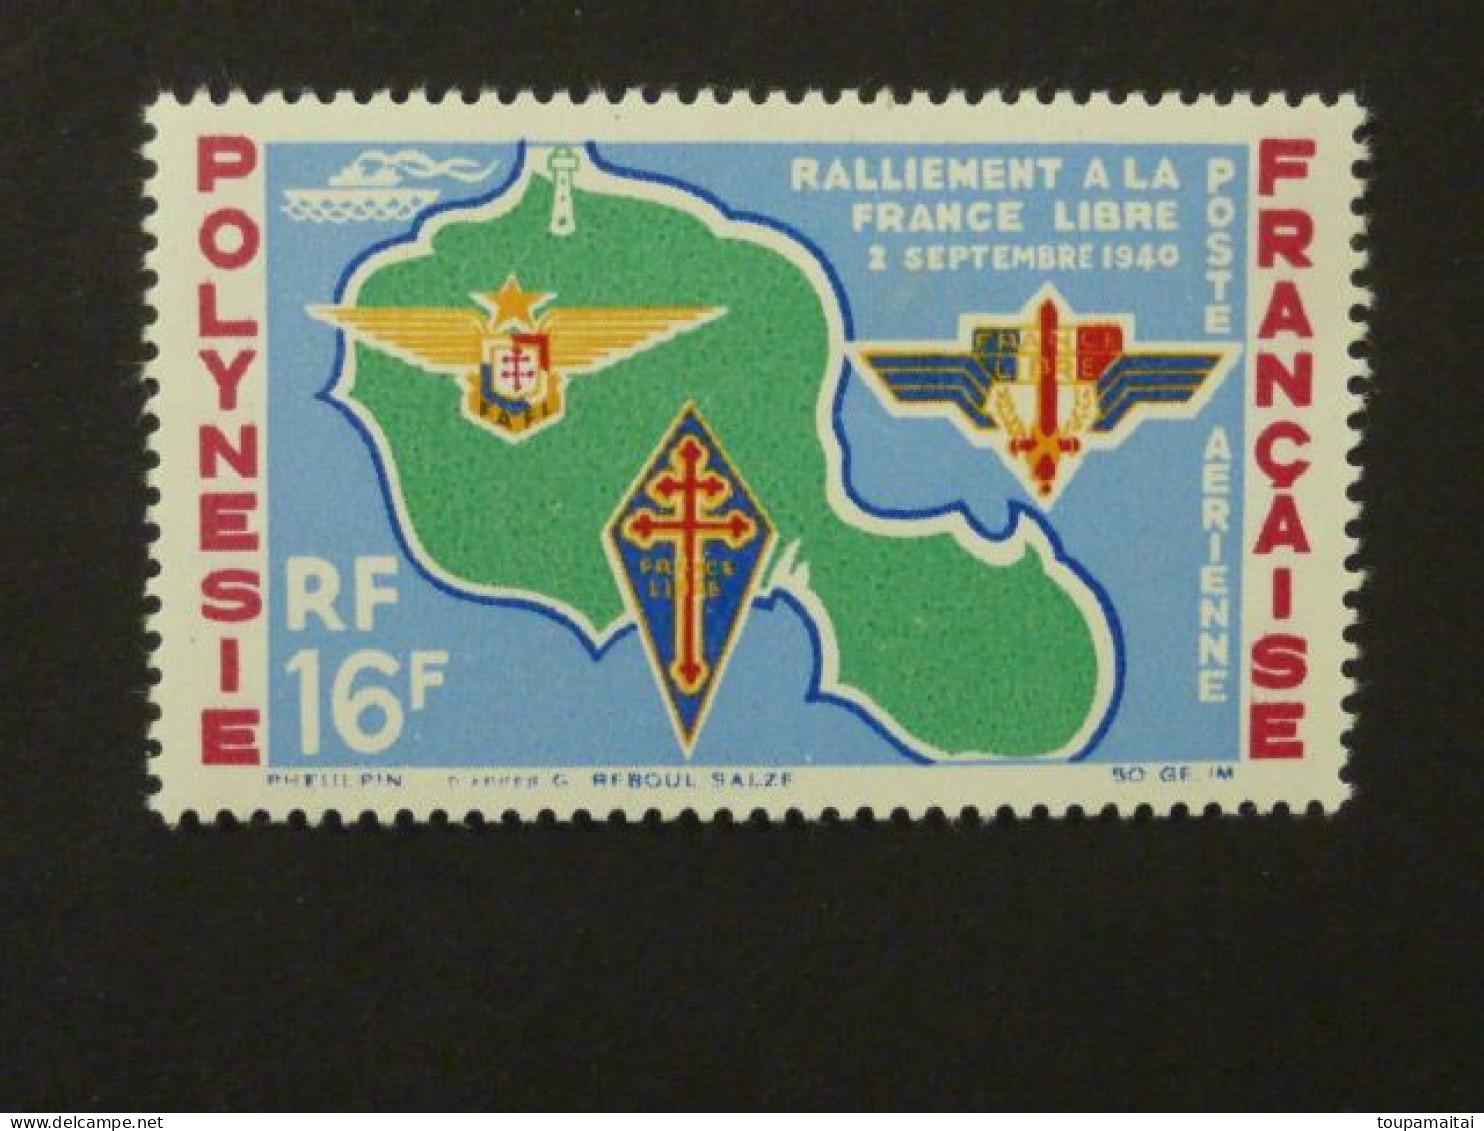 POLYNESIE FRANCAISE, Poste Aérienne, Année 1964, YT N° 8 Neuf MH, Ralliement à La France Libre Le 2 Septembre 1940 - Nuovi